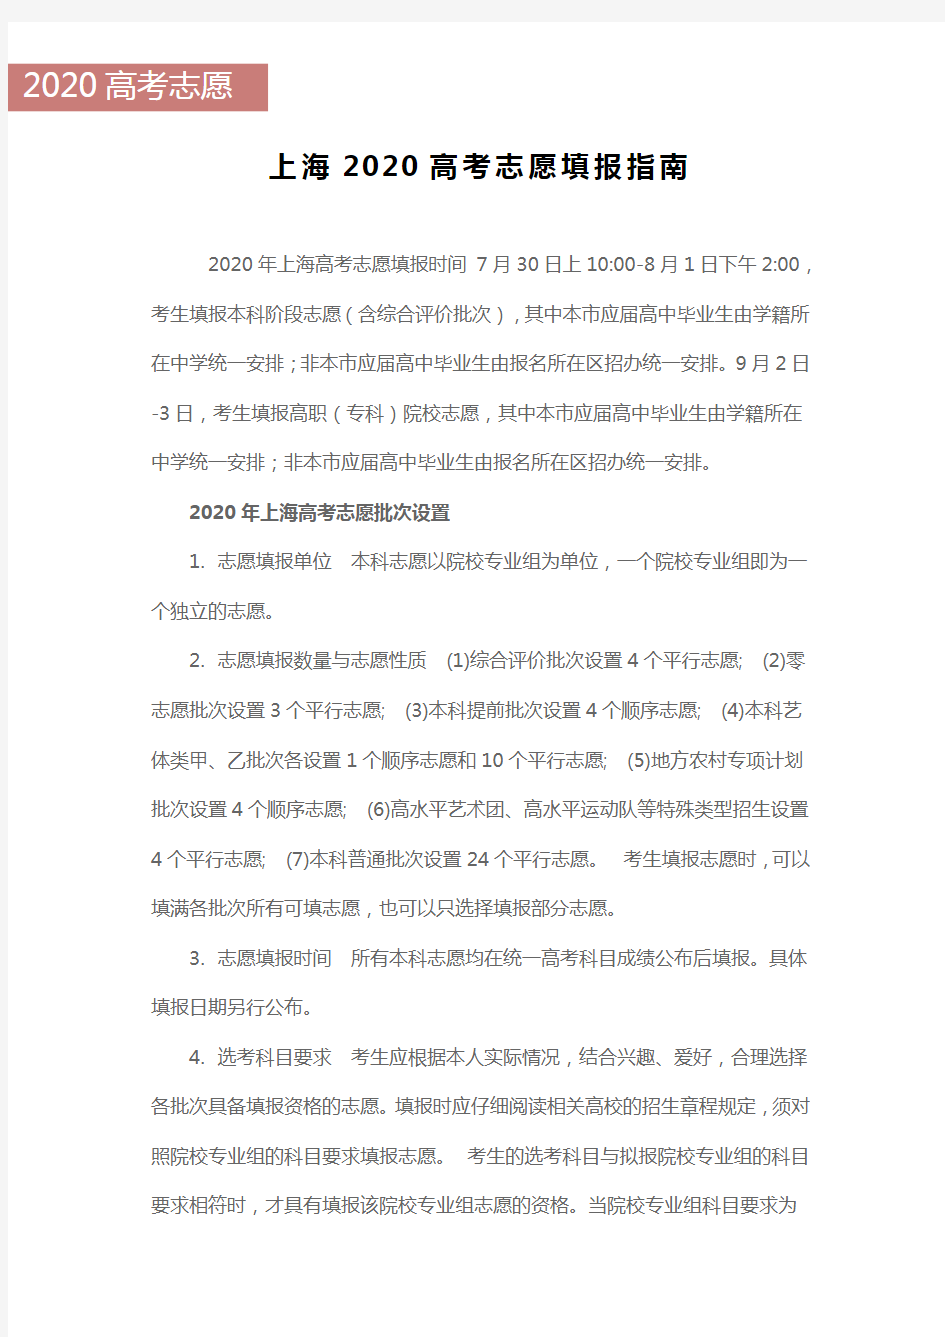 上海2020高考志愿填报指南